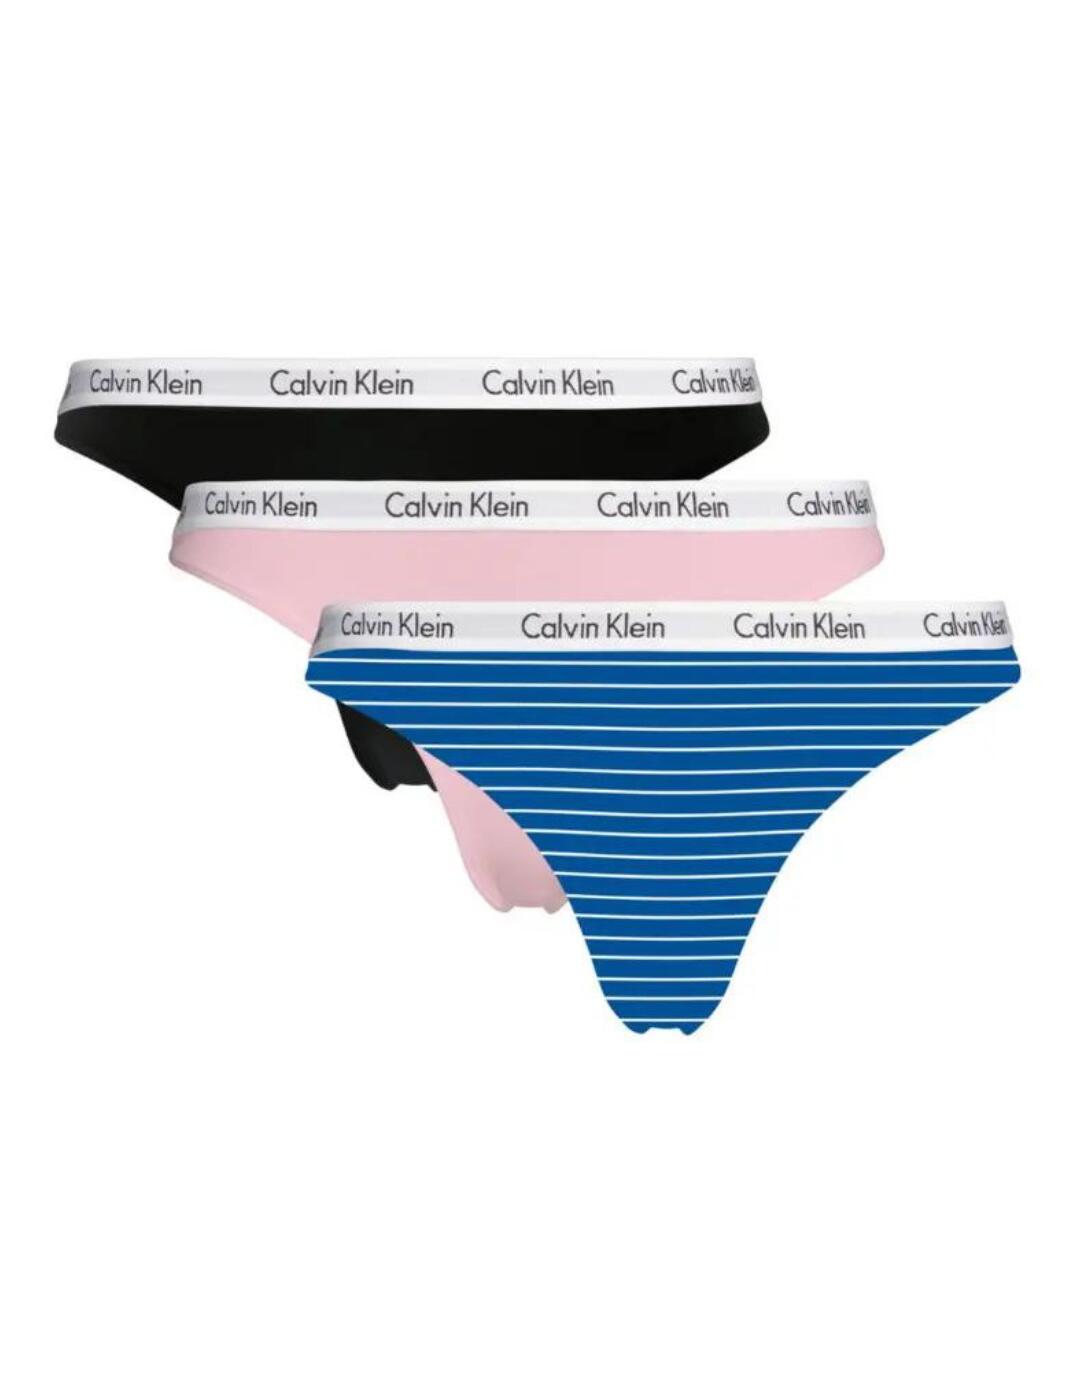 Calvin Klein Carousel Thong 3 Pack Stripe Kettle Blue / Sand Rose / Black